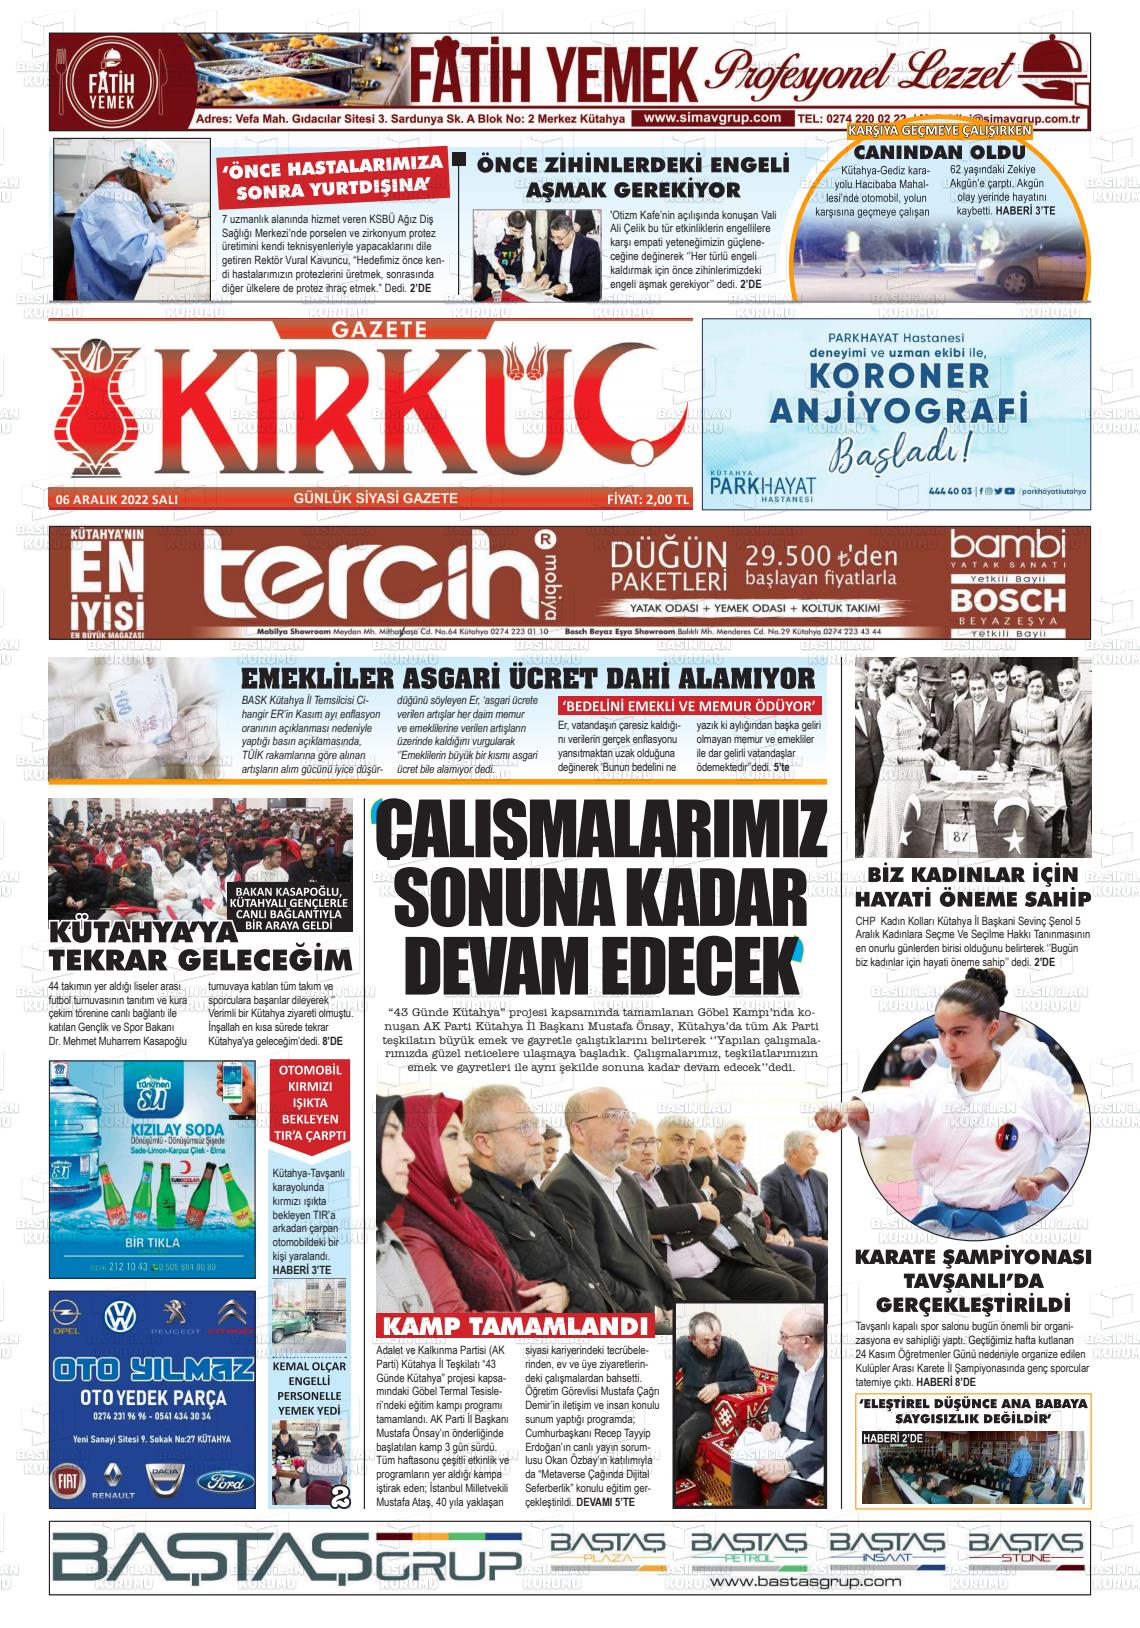 06 Aralık 2022 Gazete Kırküç Gazete Manşeti